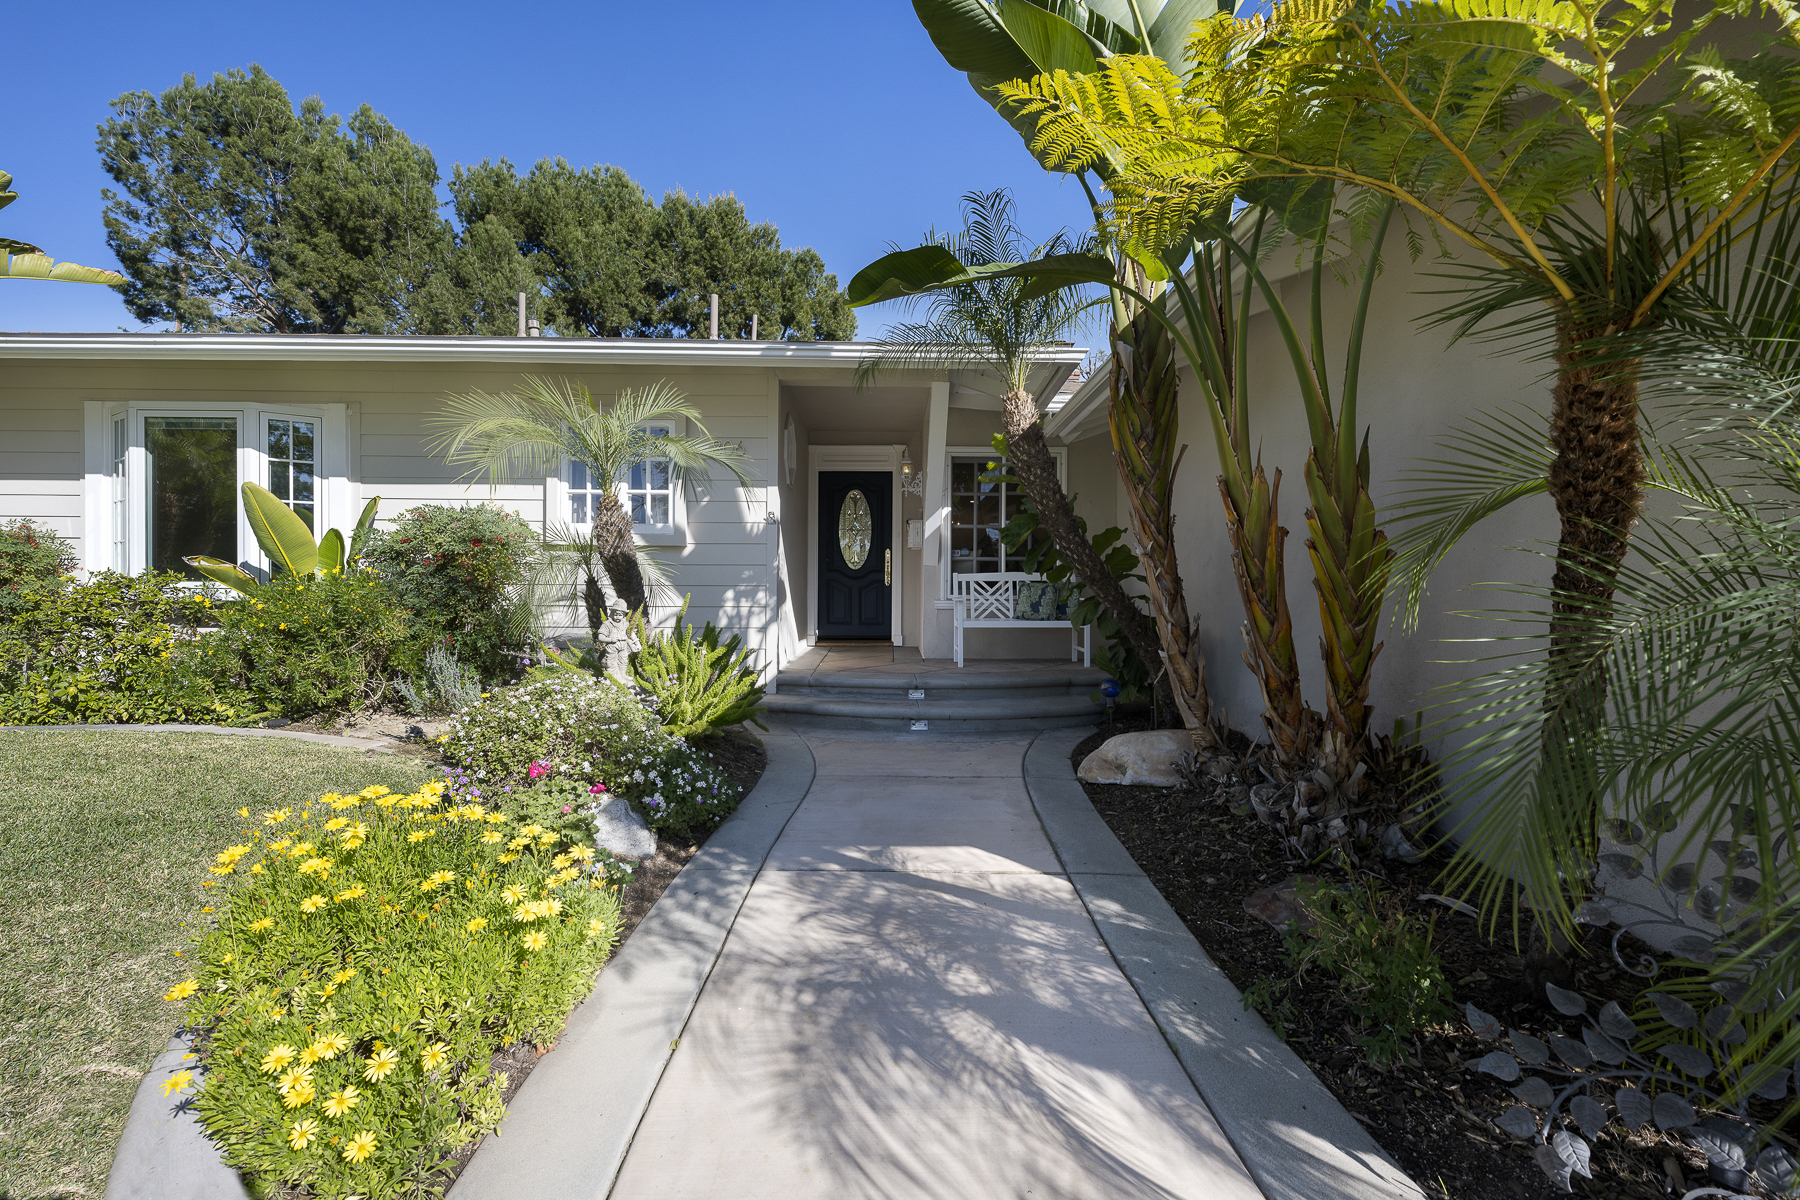 806 N. Adlena Drive, Fullerton, CA 92833: Exterior shot of front walk up entrance, landscaping.